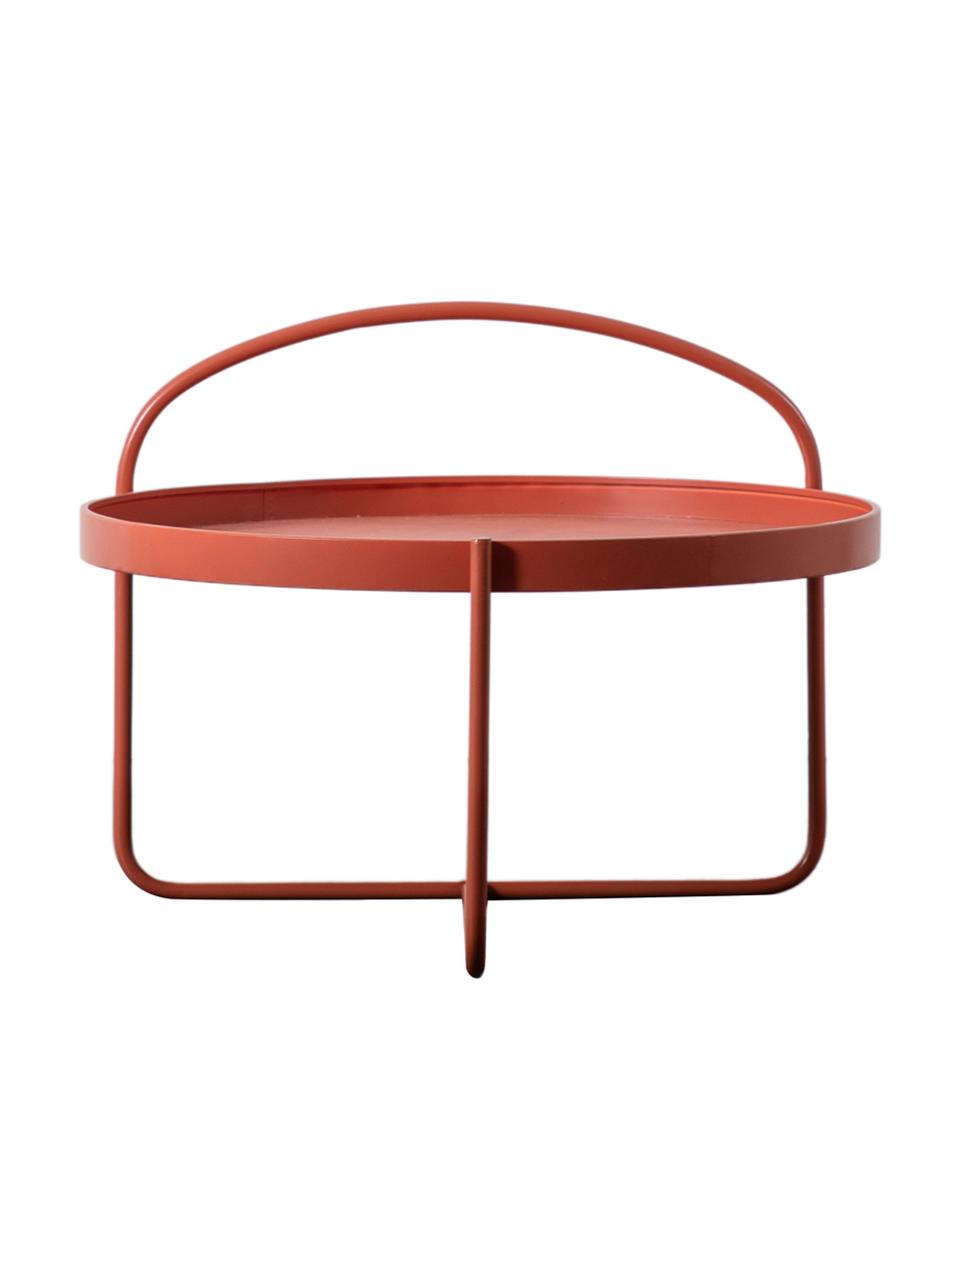 Kulatý konferenční stolek Melbury, Ocel s práškovým nástřikem, Červená, Ø 65 cm, V 50 cm